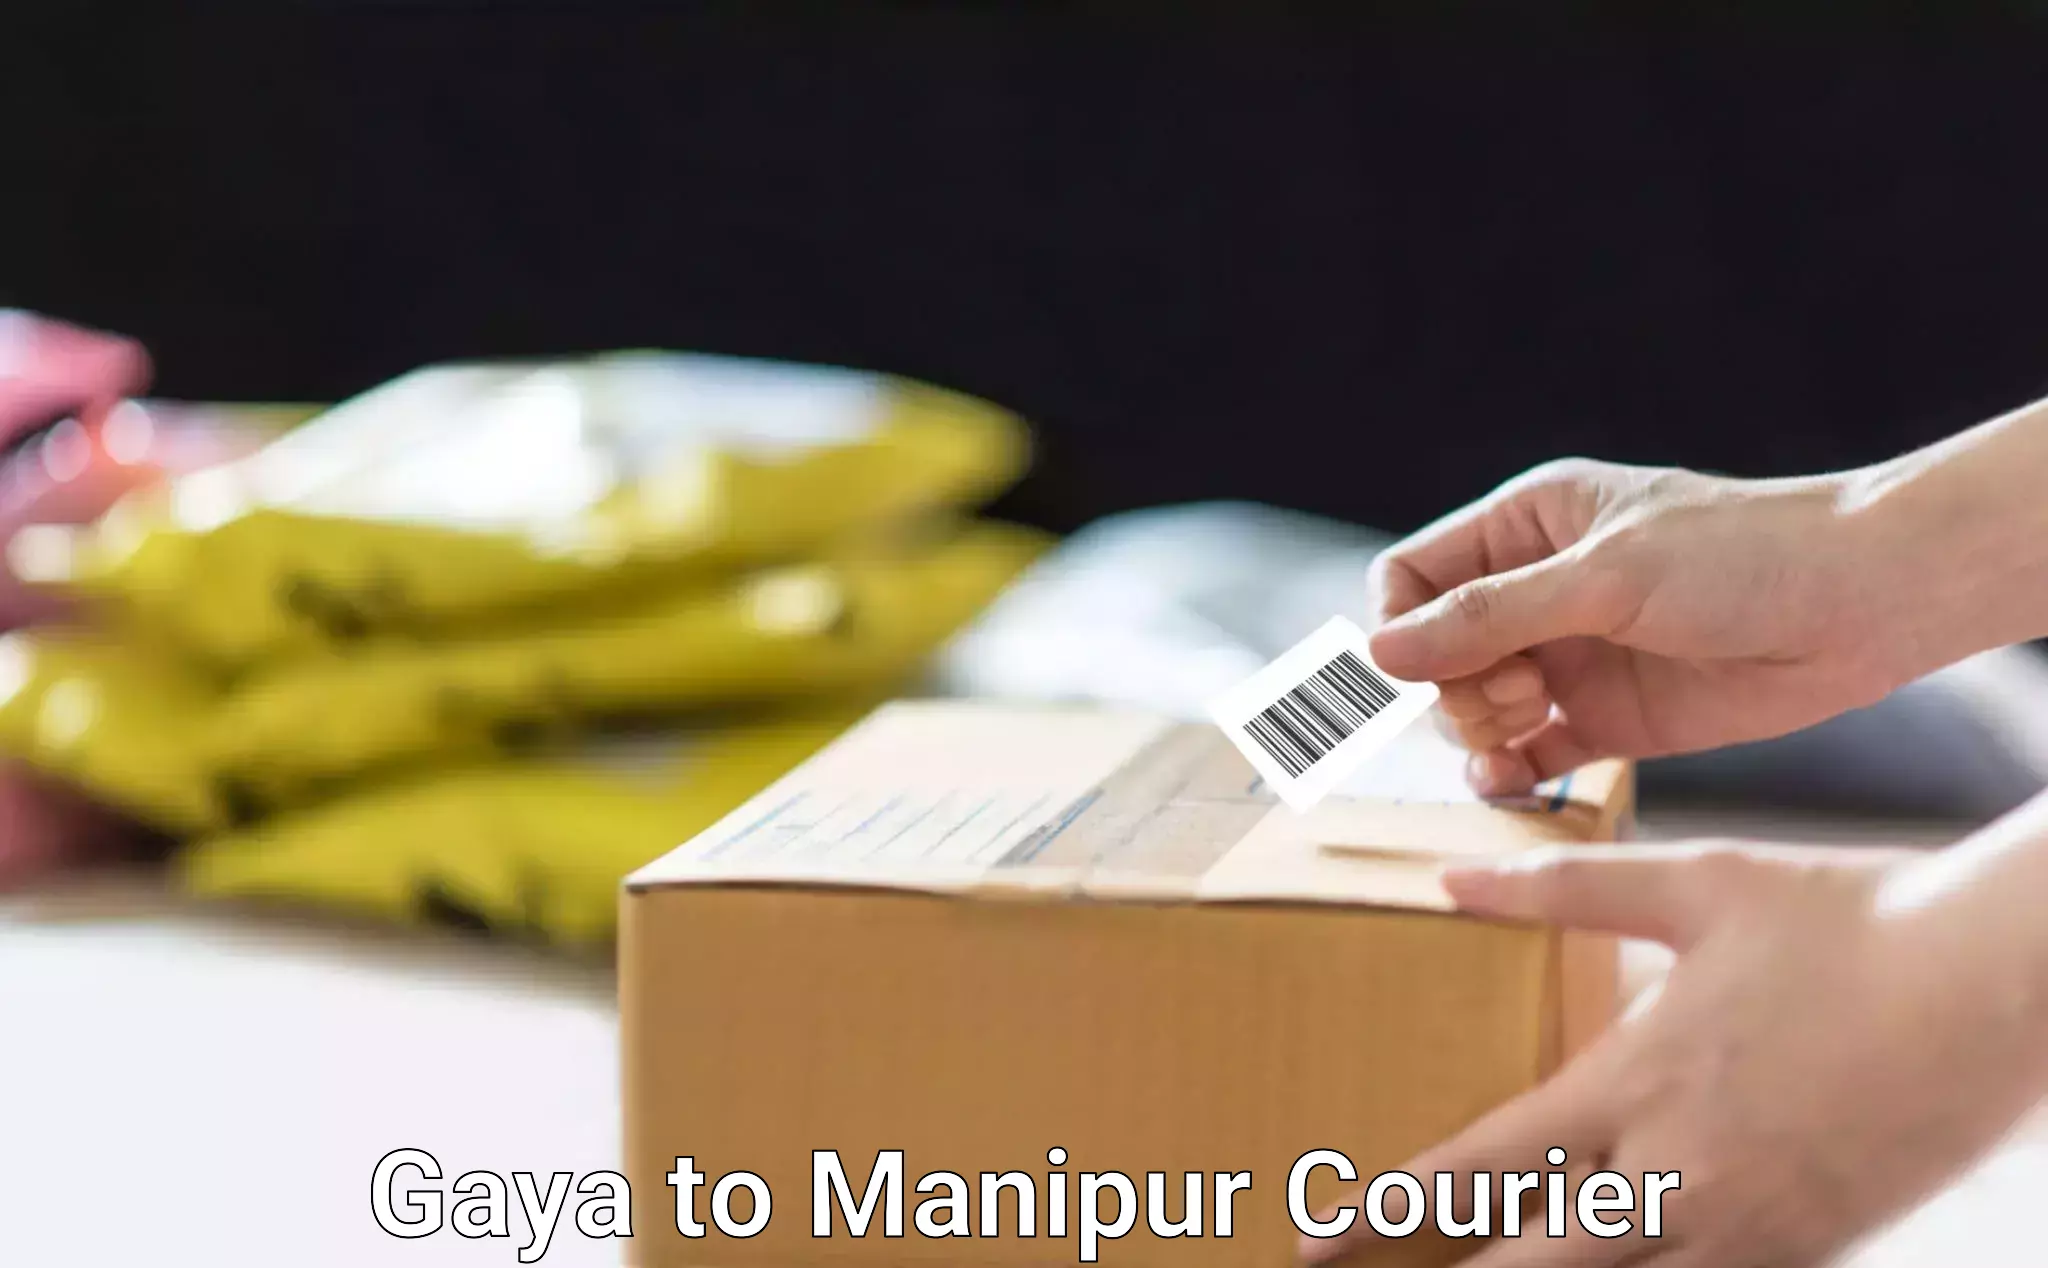 Furniture moving experts Gaya to Manipur